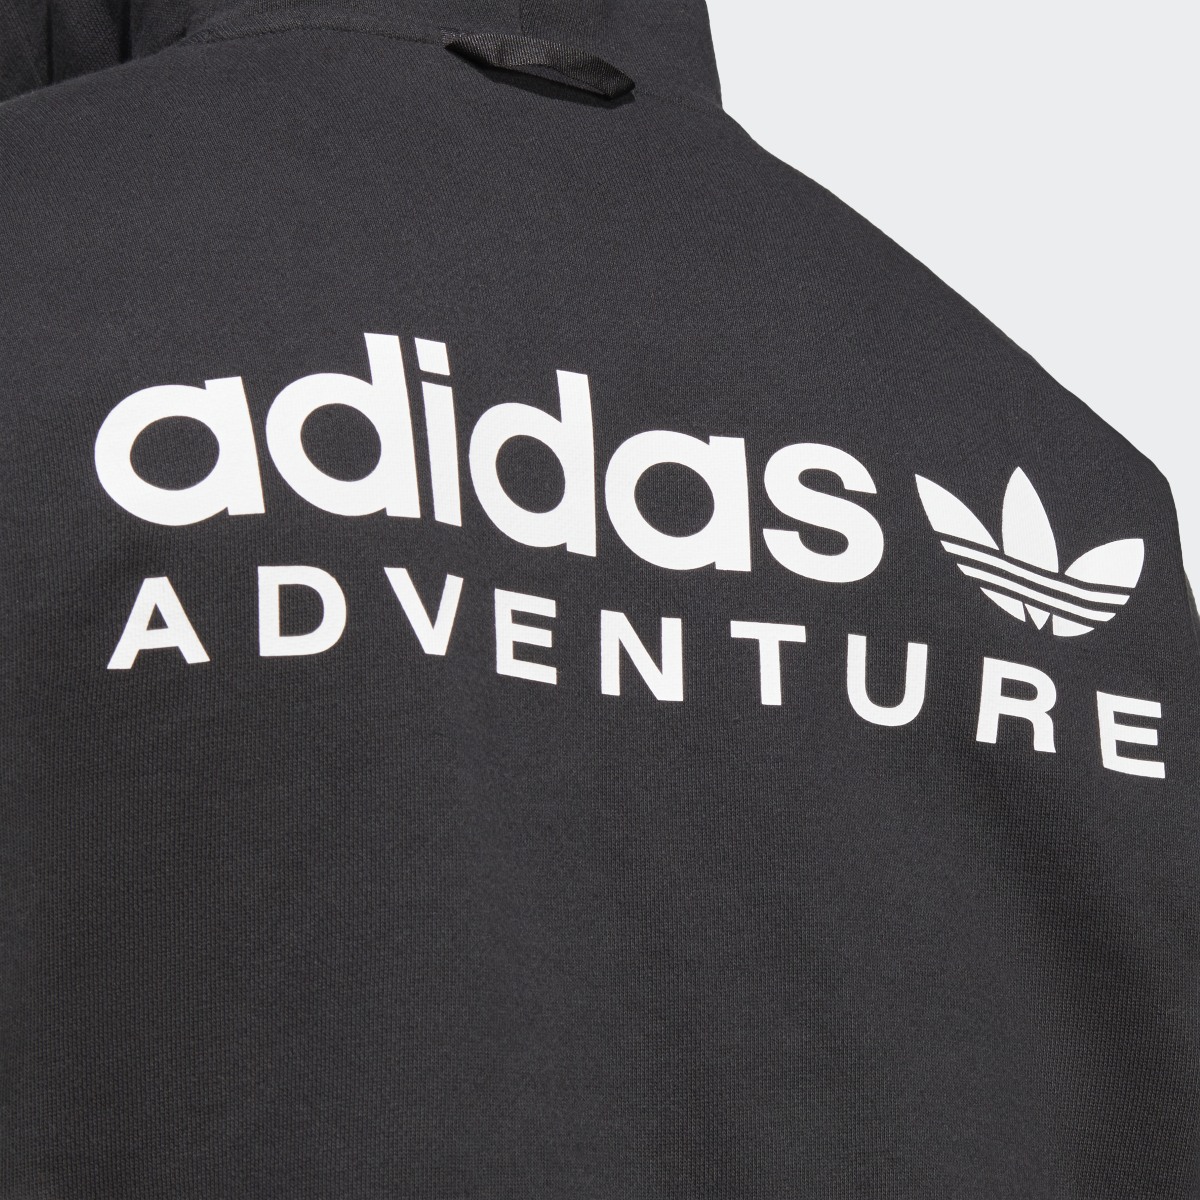 Adidas Sudadera con capucha adidas Adventure. 8